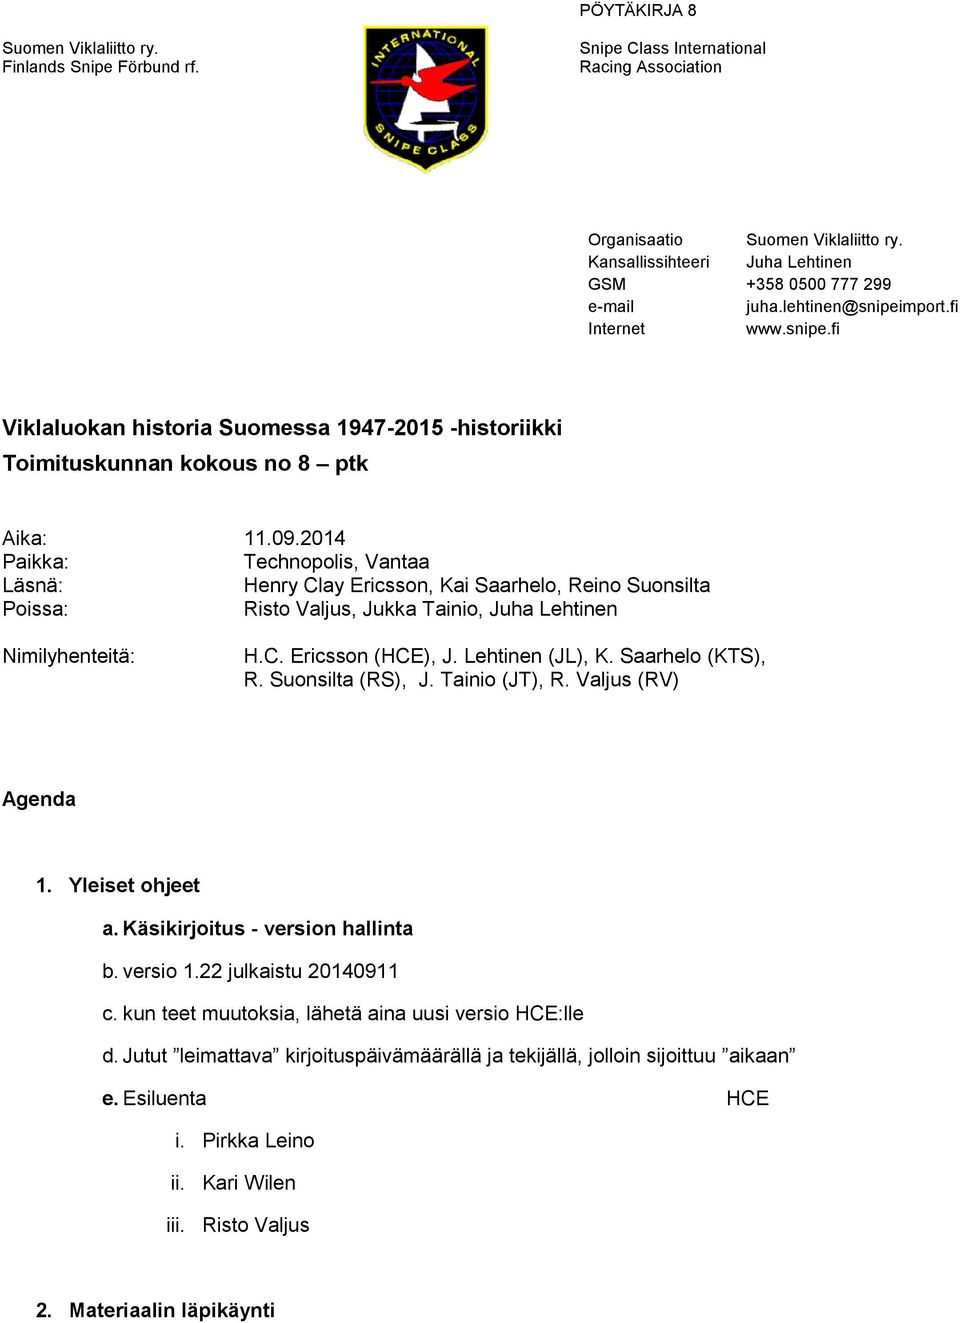 Lehtinen (JL), K. Saarhelo (KTS), R. Suonsilta (RS), J. Tainio (JT), R. Valjus (RV) Agenda 1. Yleiset ohjeet a. Käsikirjoitus - version hallinta b. versio 1.22 julkaistu 20140911 c.